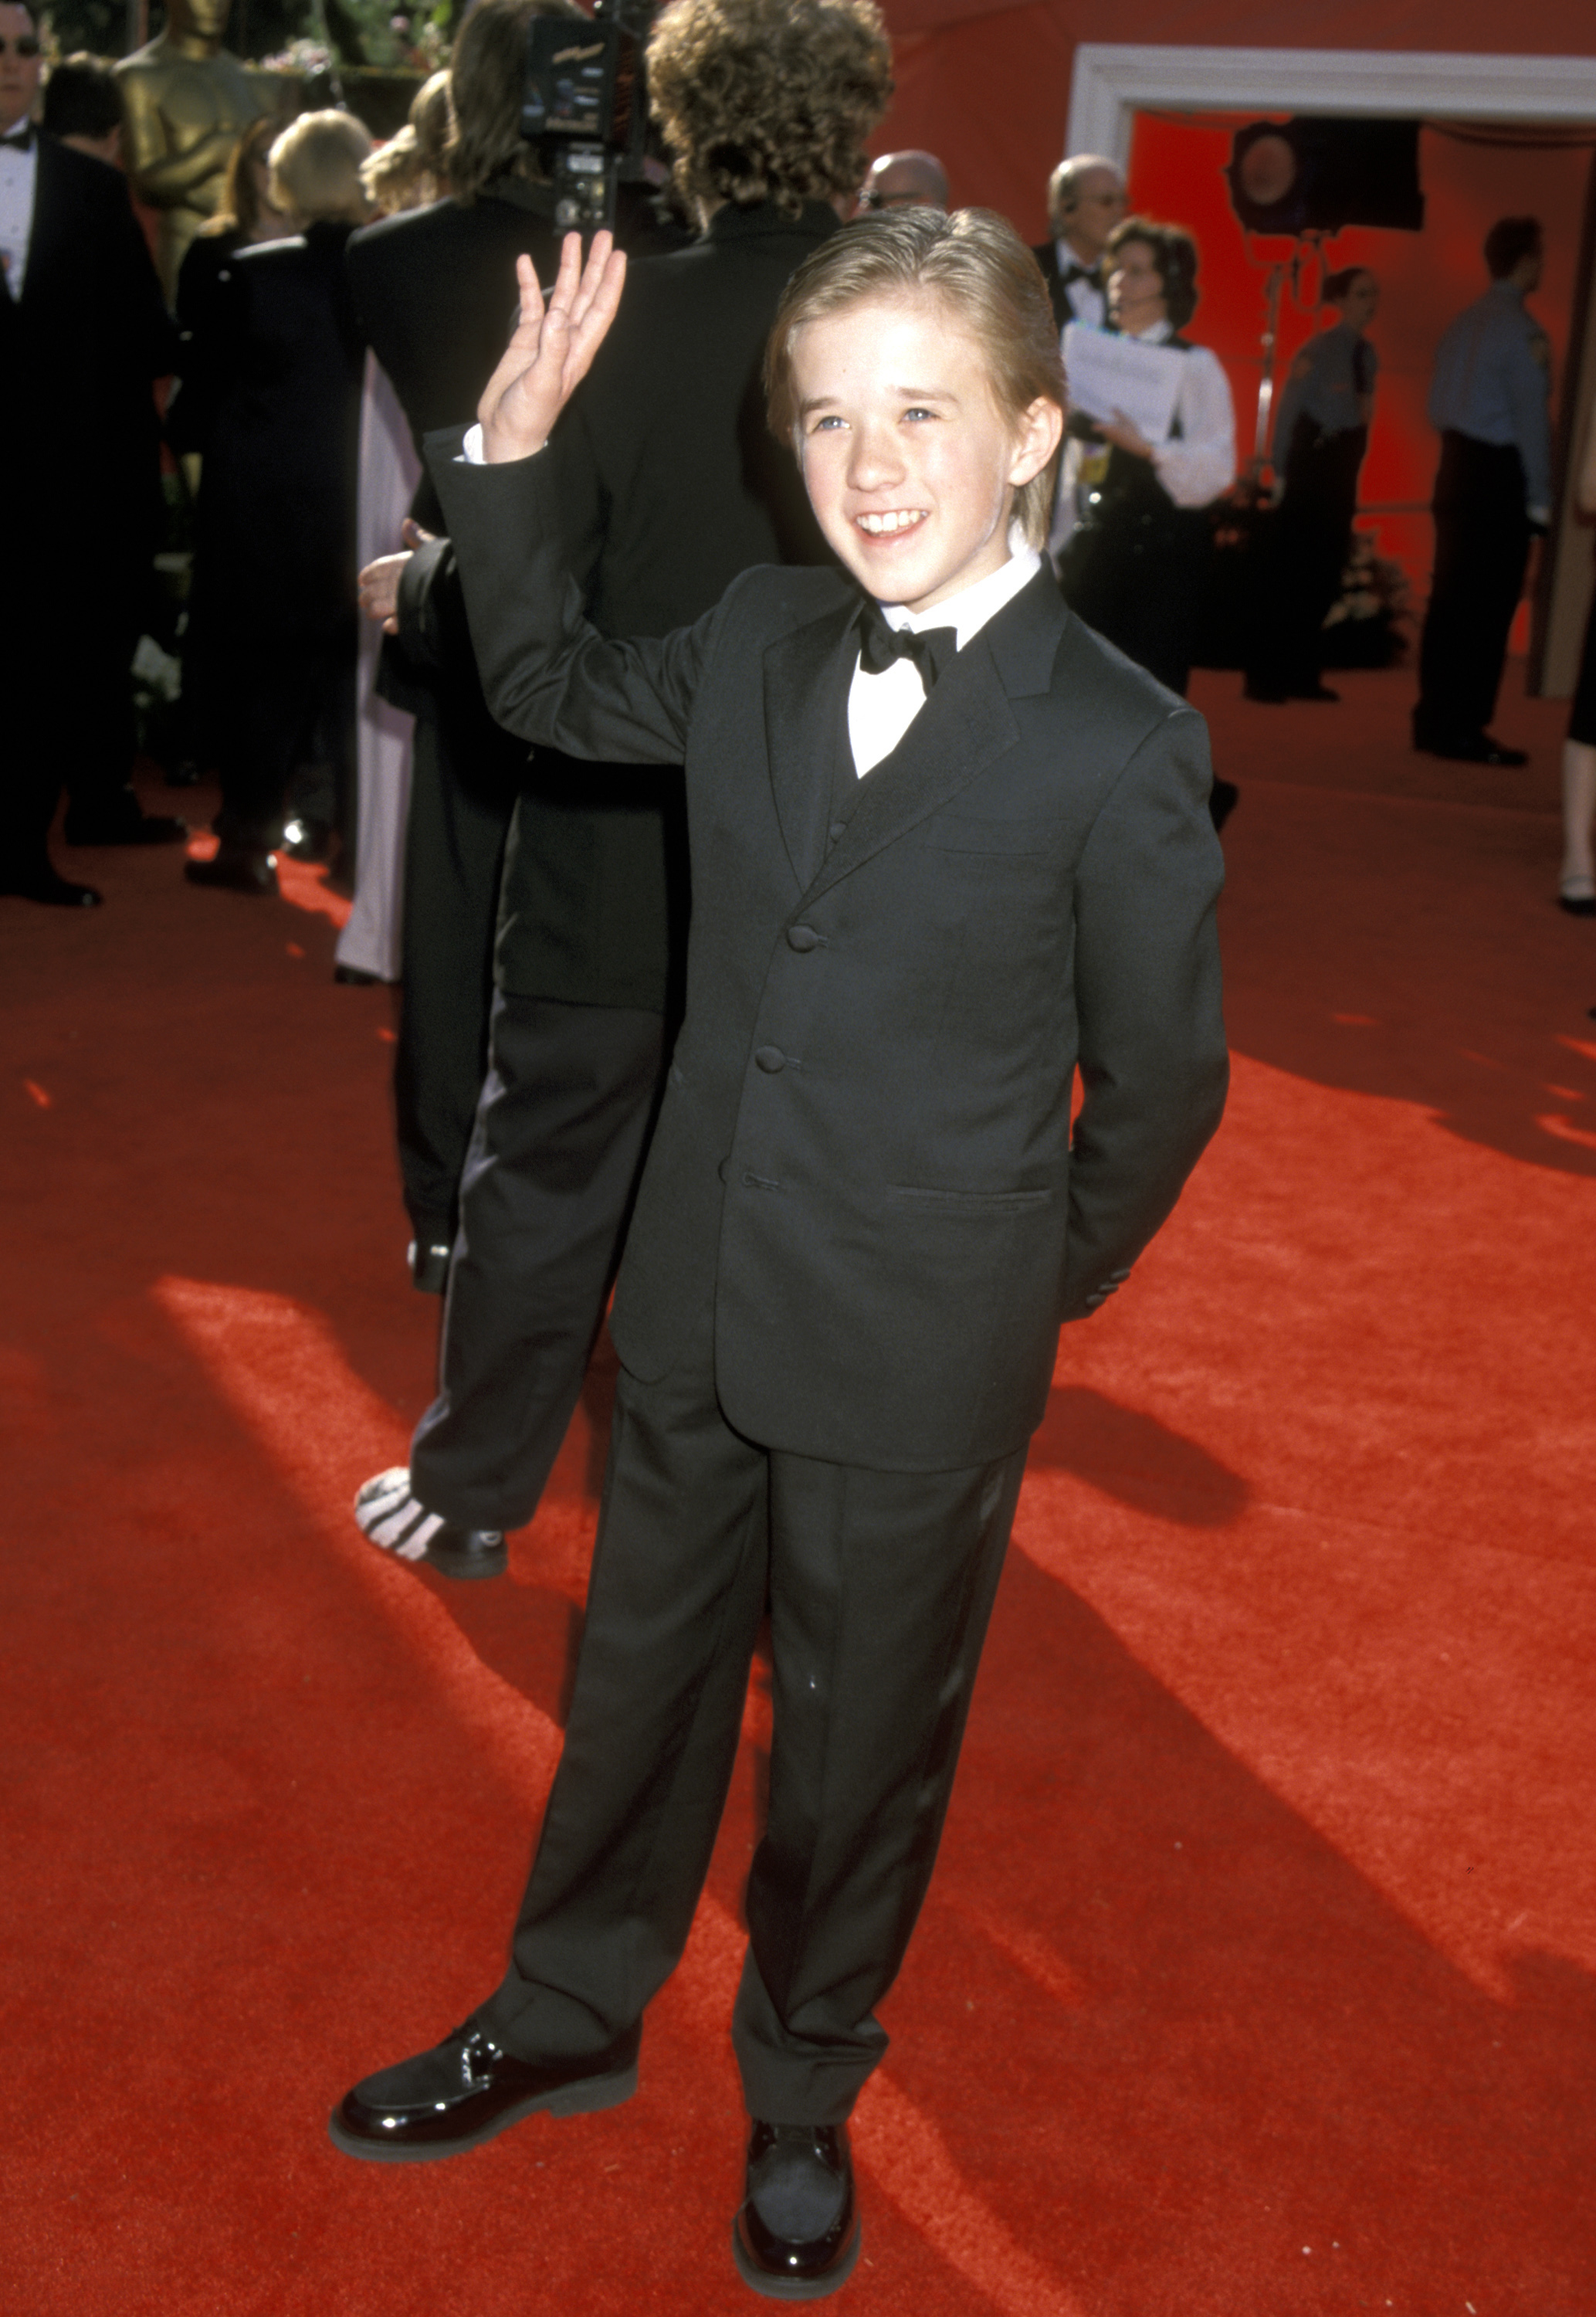 Haley Joel Osment at the Oscars